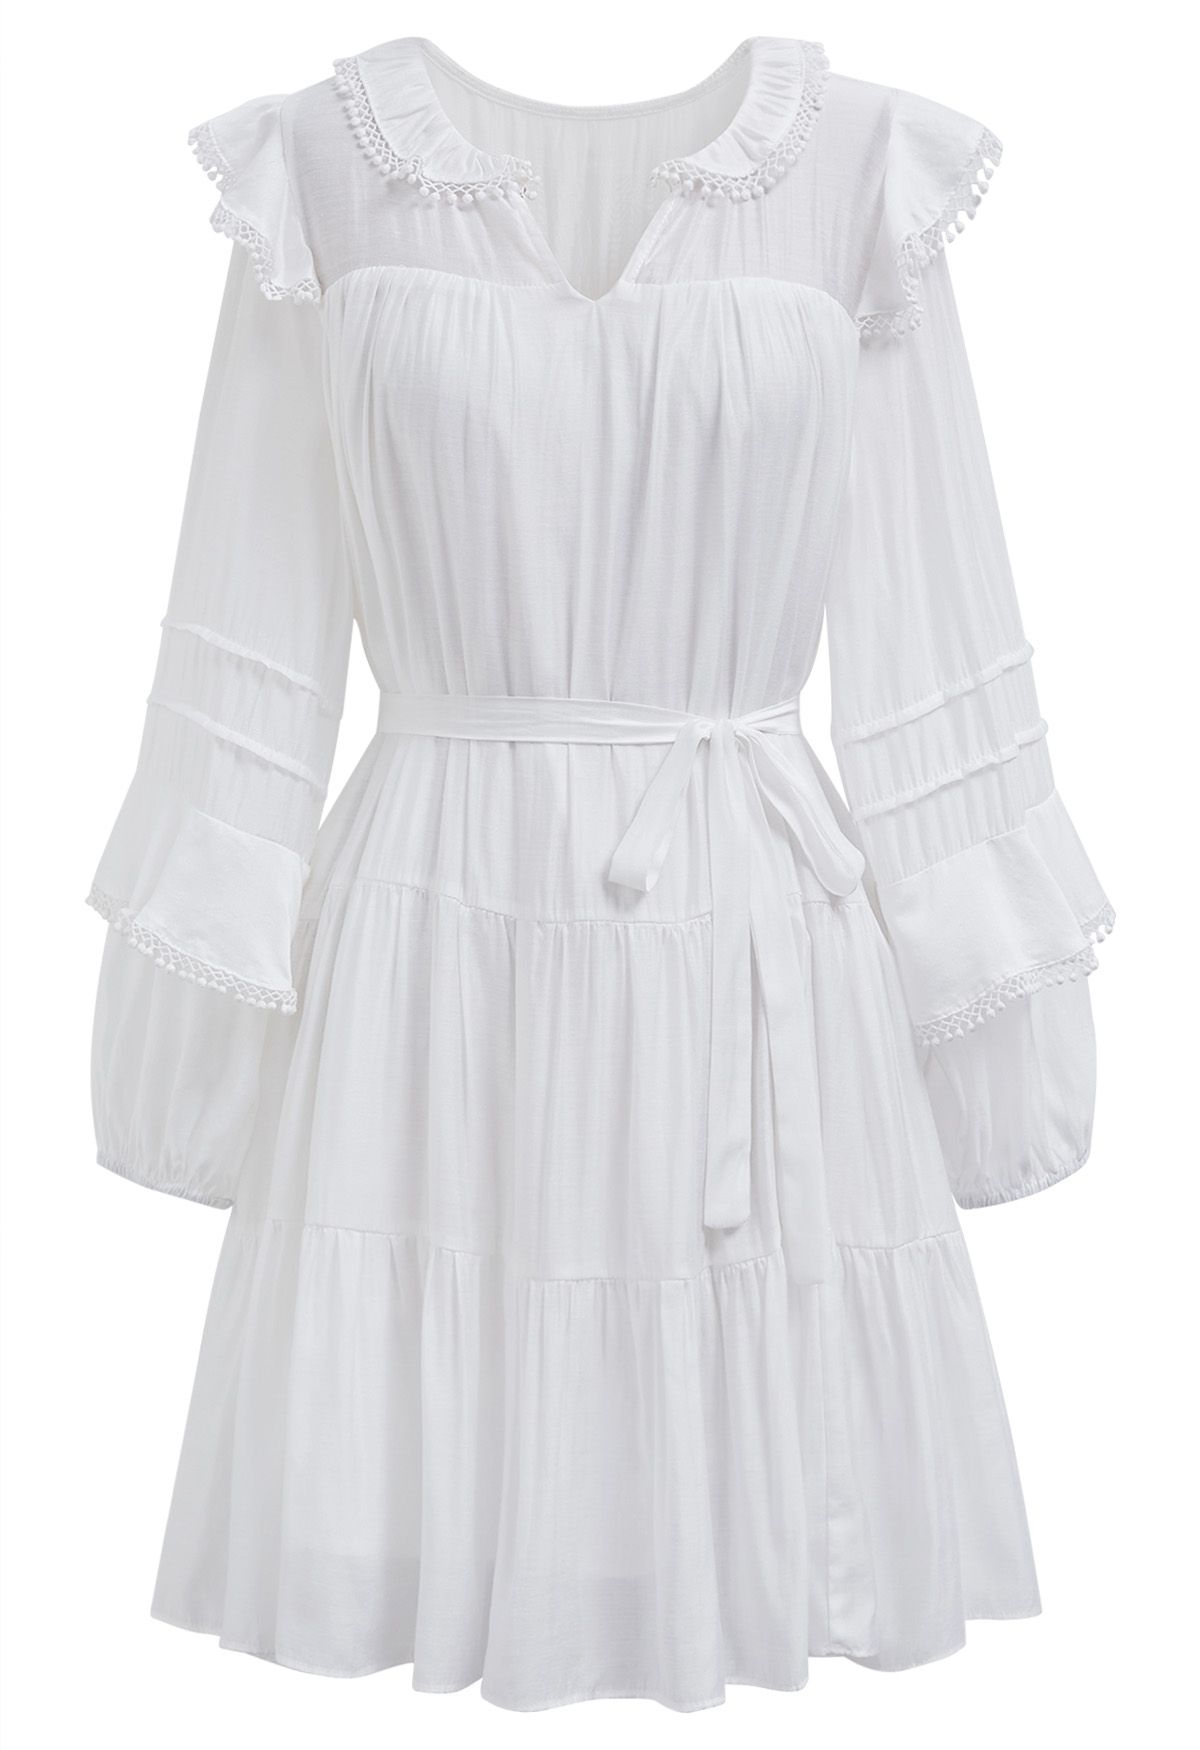 فستان قصير بأكمام متدرجة وتفاصيل هامشية باللون الأبيض